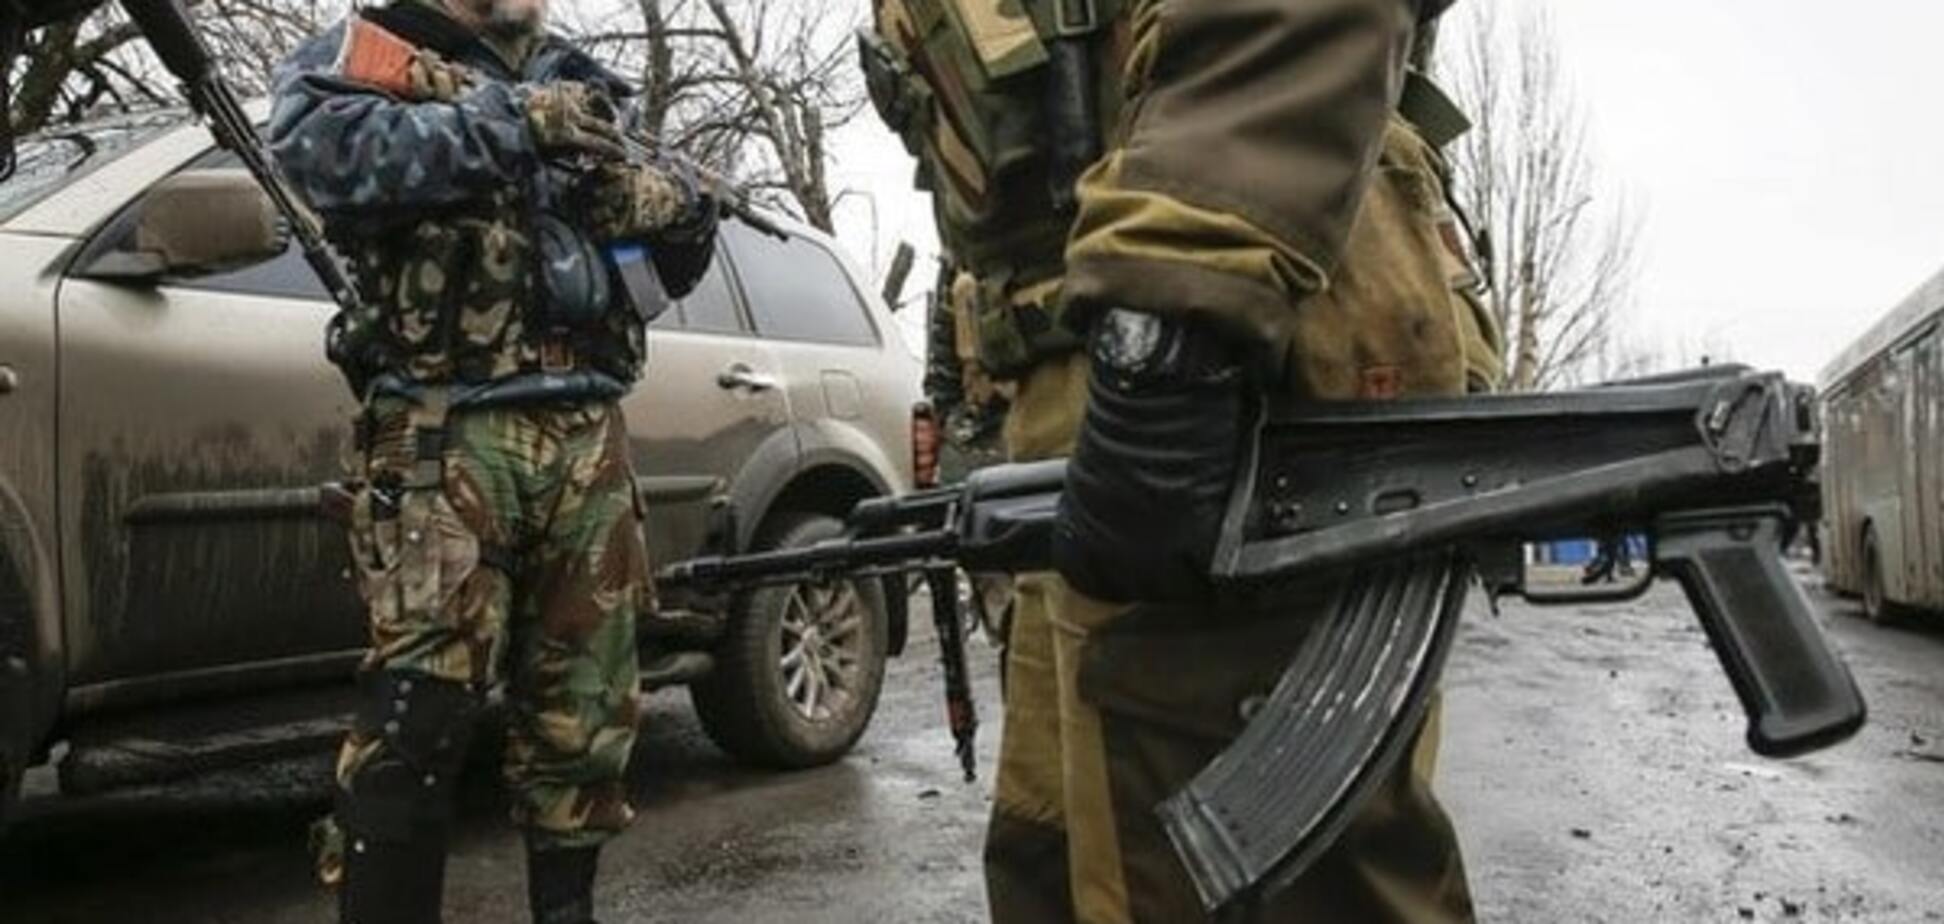 Ждут льгот и пенсий: боевики Донбасса рассчитывают, что Госдума признает их ветеранами 